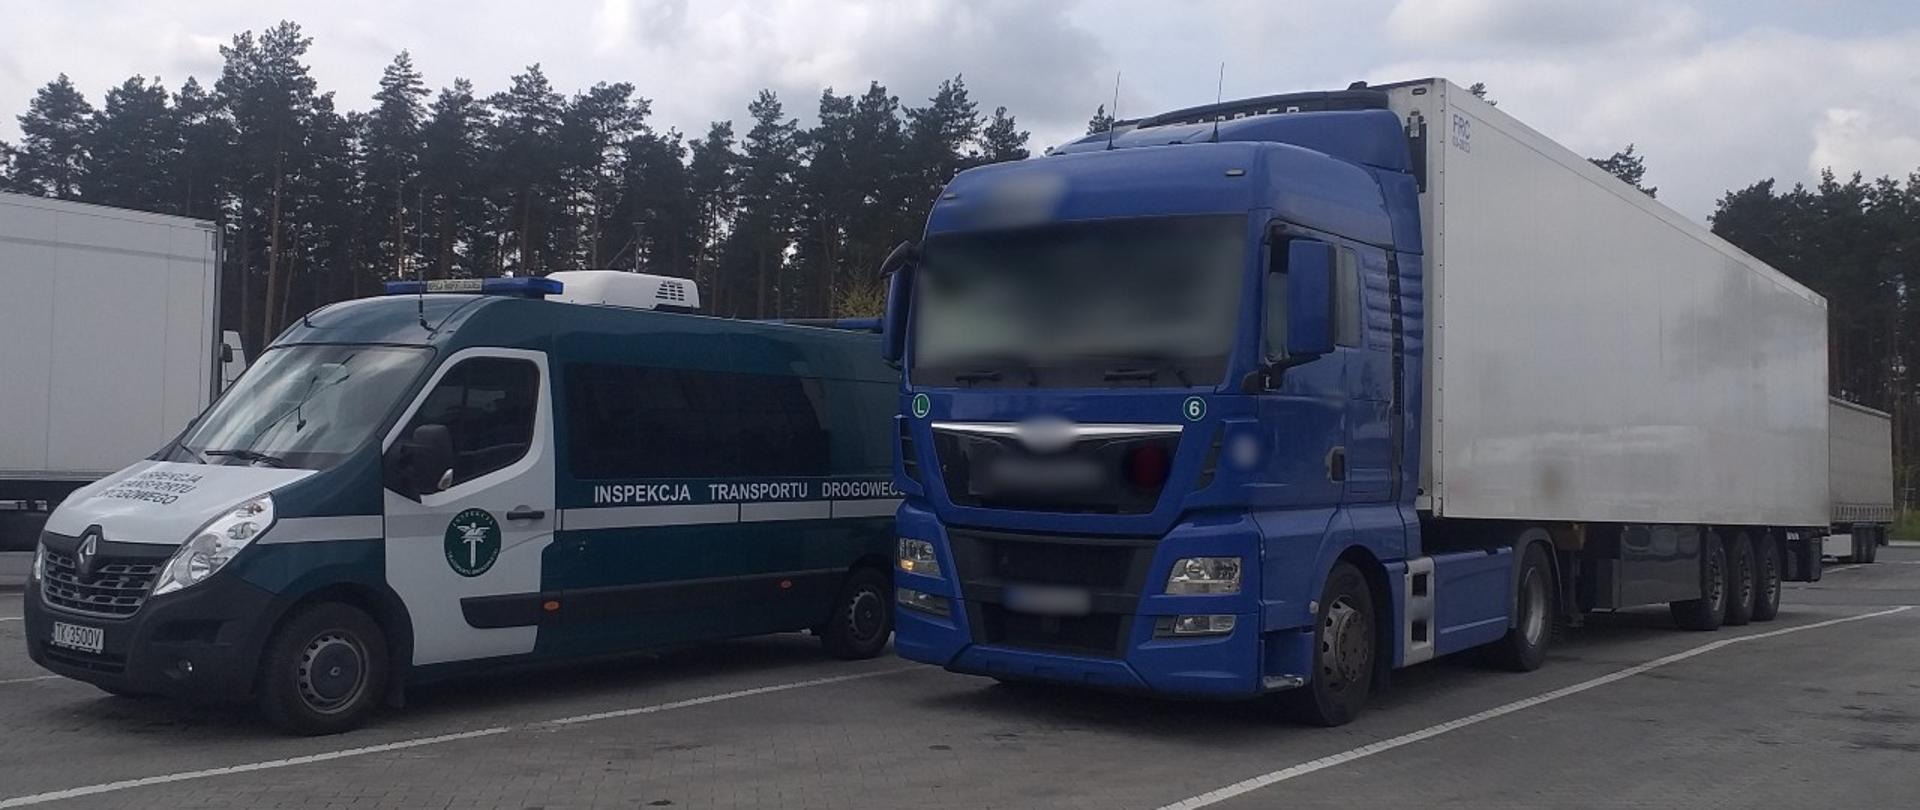 Od lewej: przód i lewy bok oznakowanego furgonu świętokrzyskiej Inspekcji Transportu Drogowego. Obok stoi ciągnik siodłowy z podpiętą naczepą.